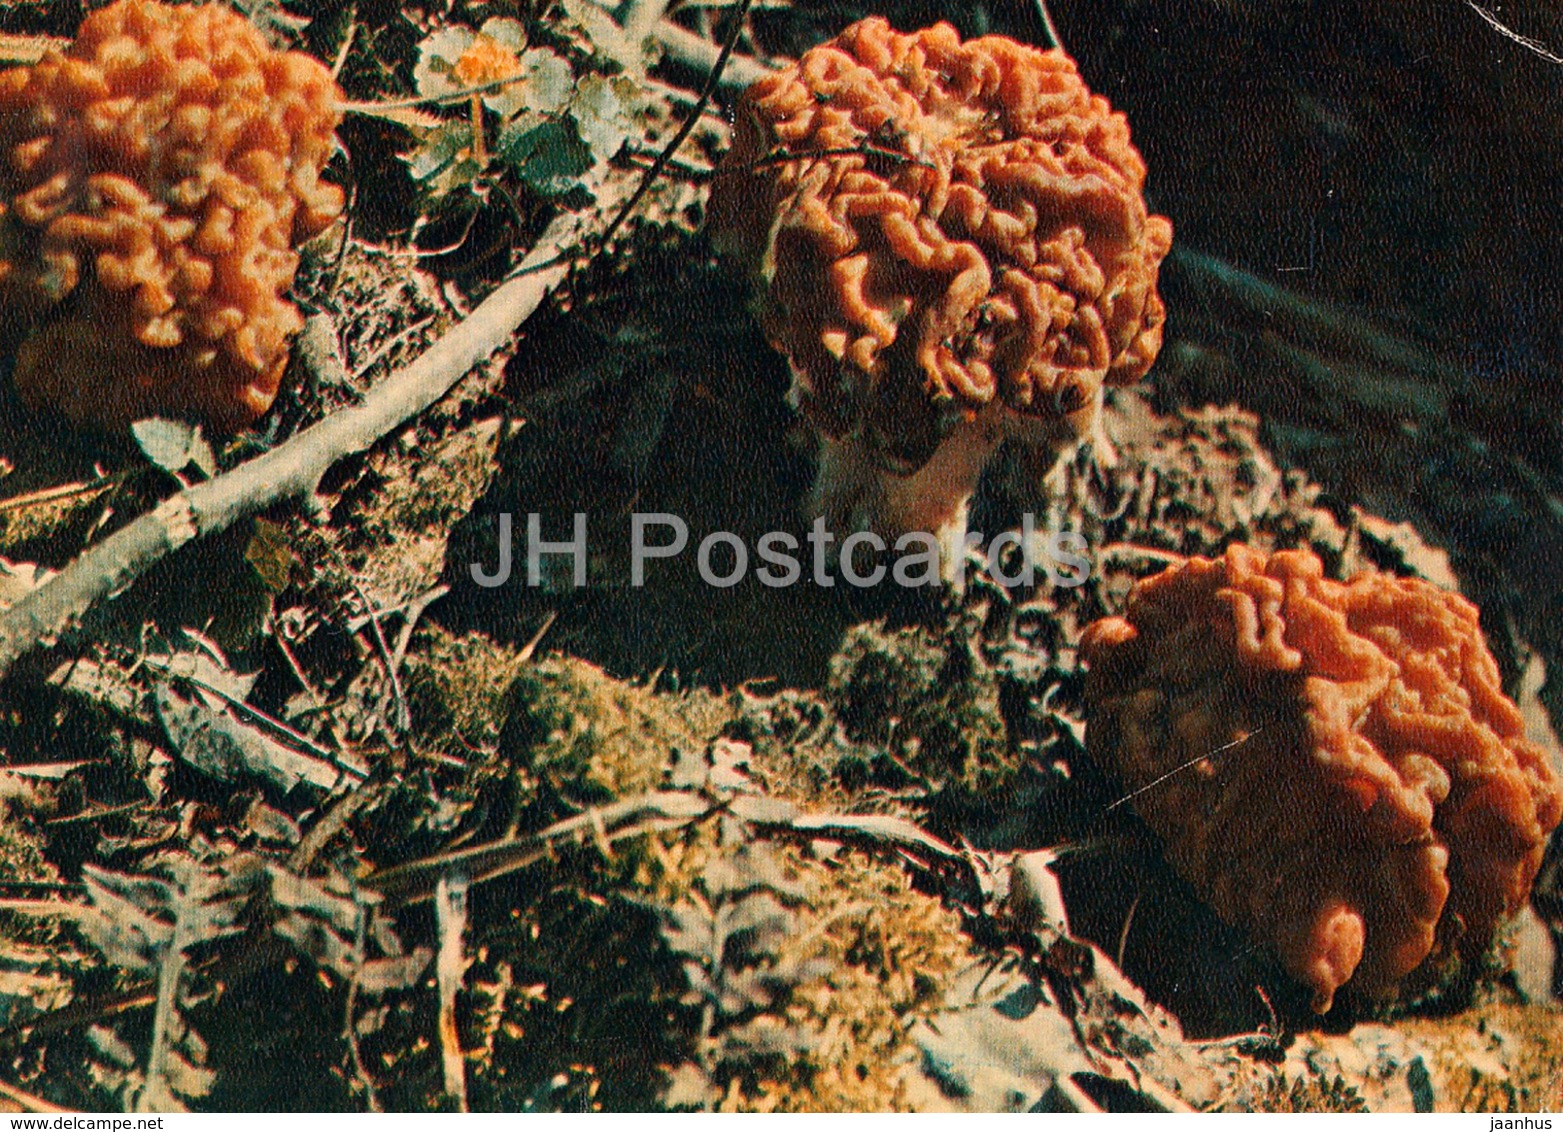 False Morel Mushroom - Gyromitra Esculenta - Mushrooms - 1980 - Russia USSR - Unused - Mushrooms